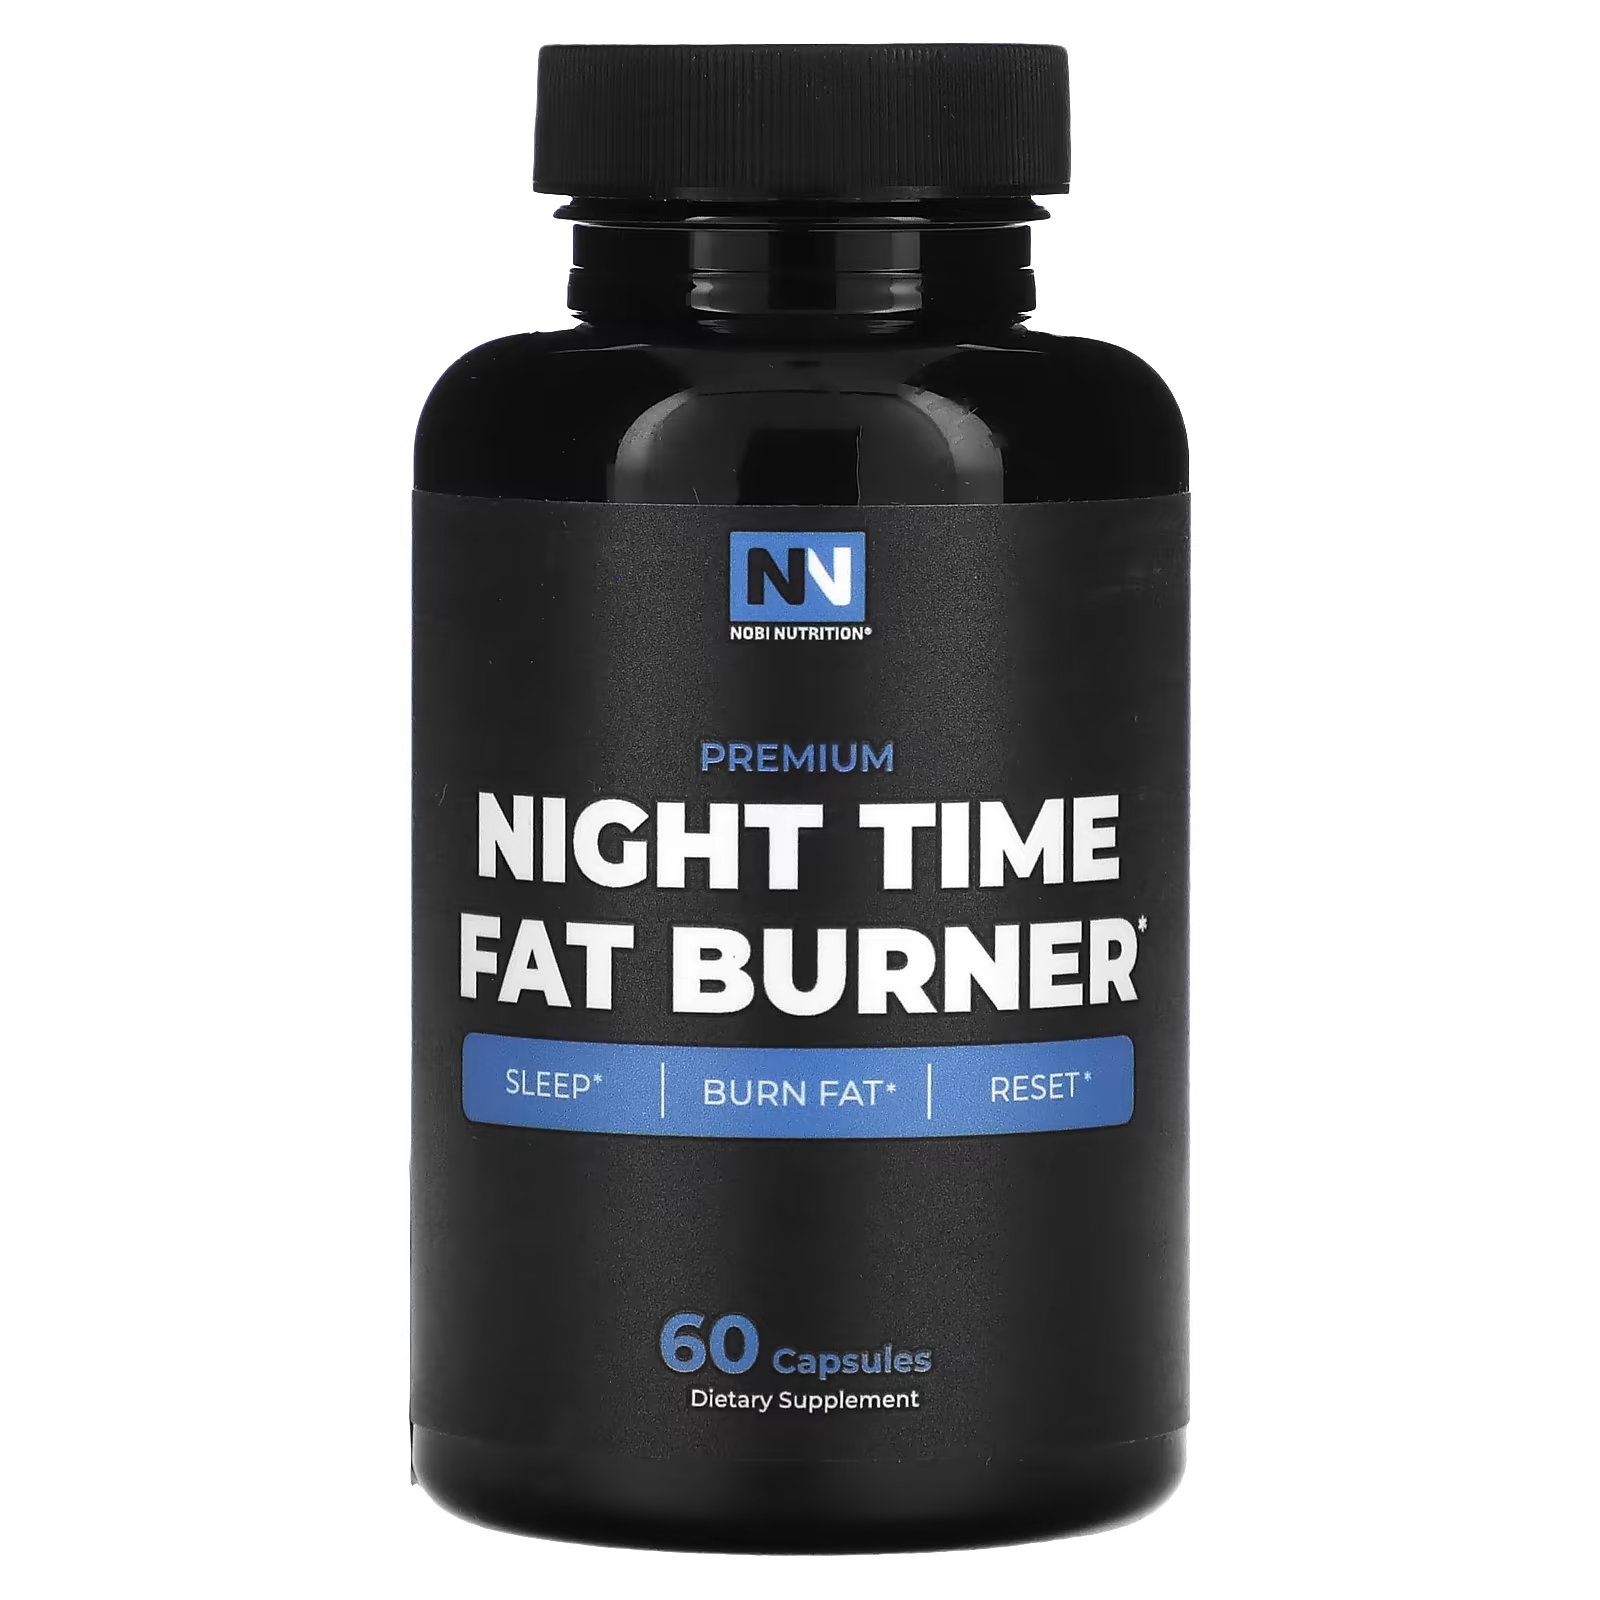 Nobi Nutrition Премиум средство для сжигания жира в ночное время, 60 капсул mav nutrition средство для сжигания жира в ночное время 60 капсул